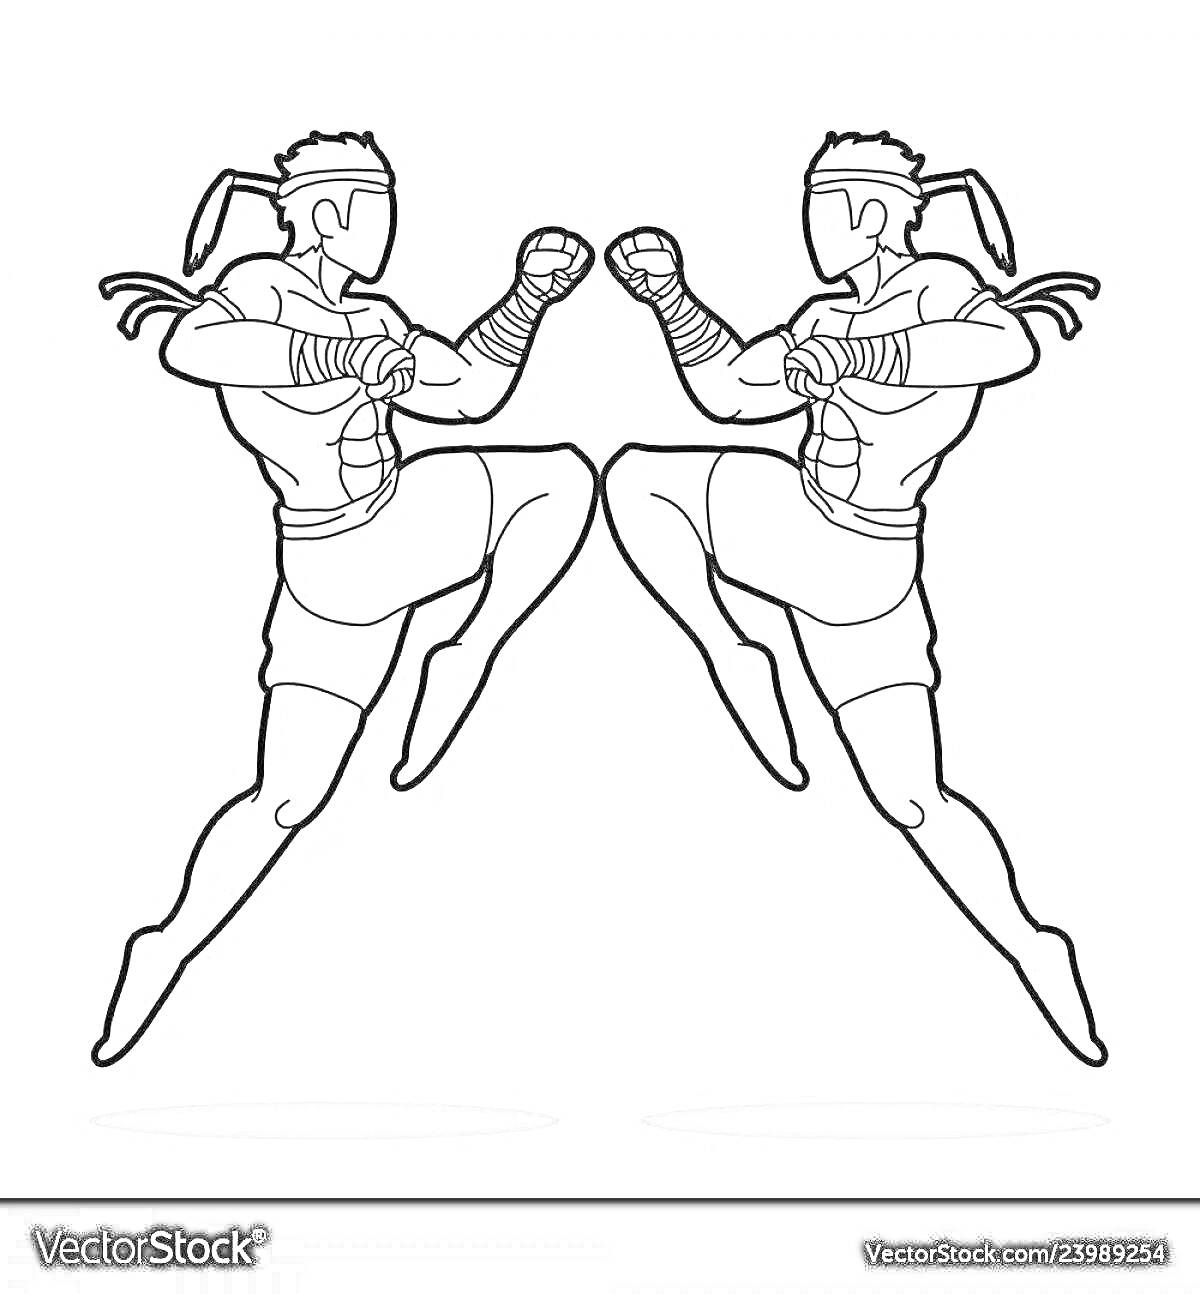 Раскраска Два боксера в прыжке с поднятыми кулаками, с повязками на руках и лентах на голове.